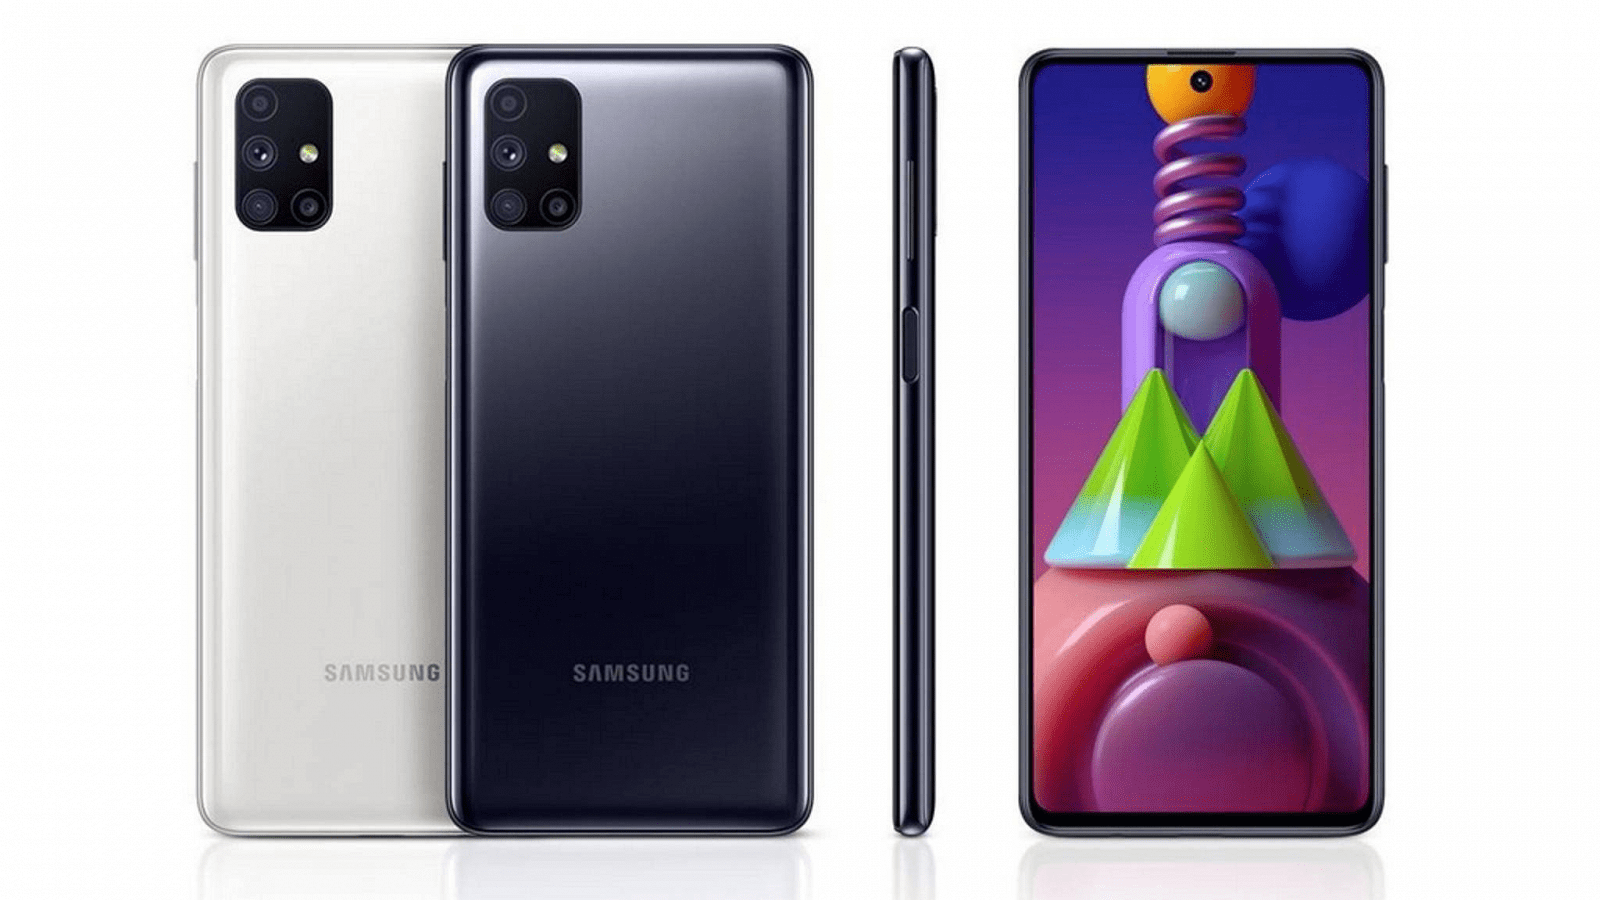 Новый рекордсмен Samsung Galaxy M51 с аккумулятором на 7000 мА•ч и NFC получил первое важное обновление